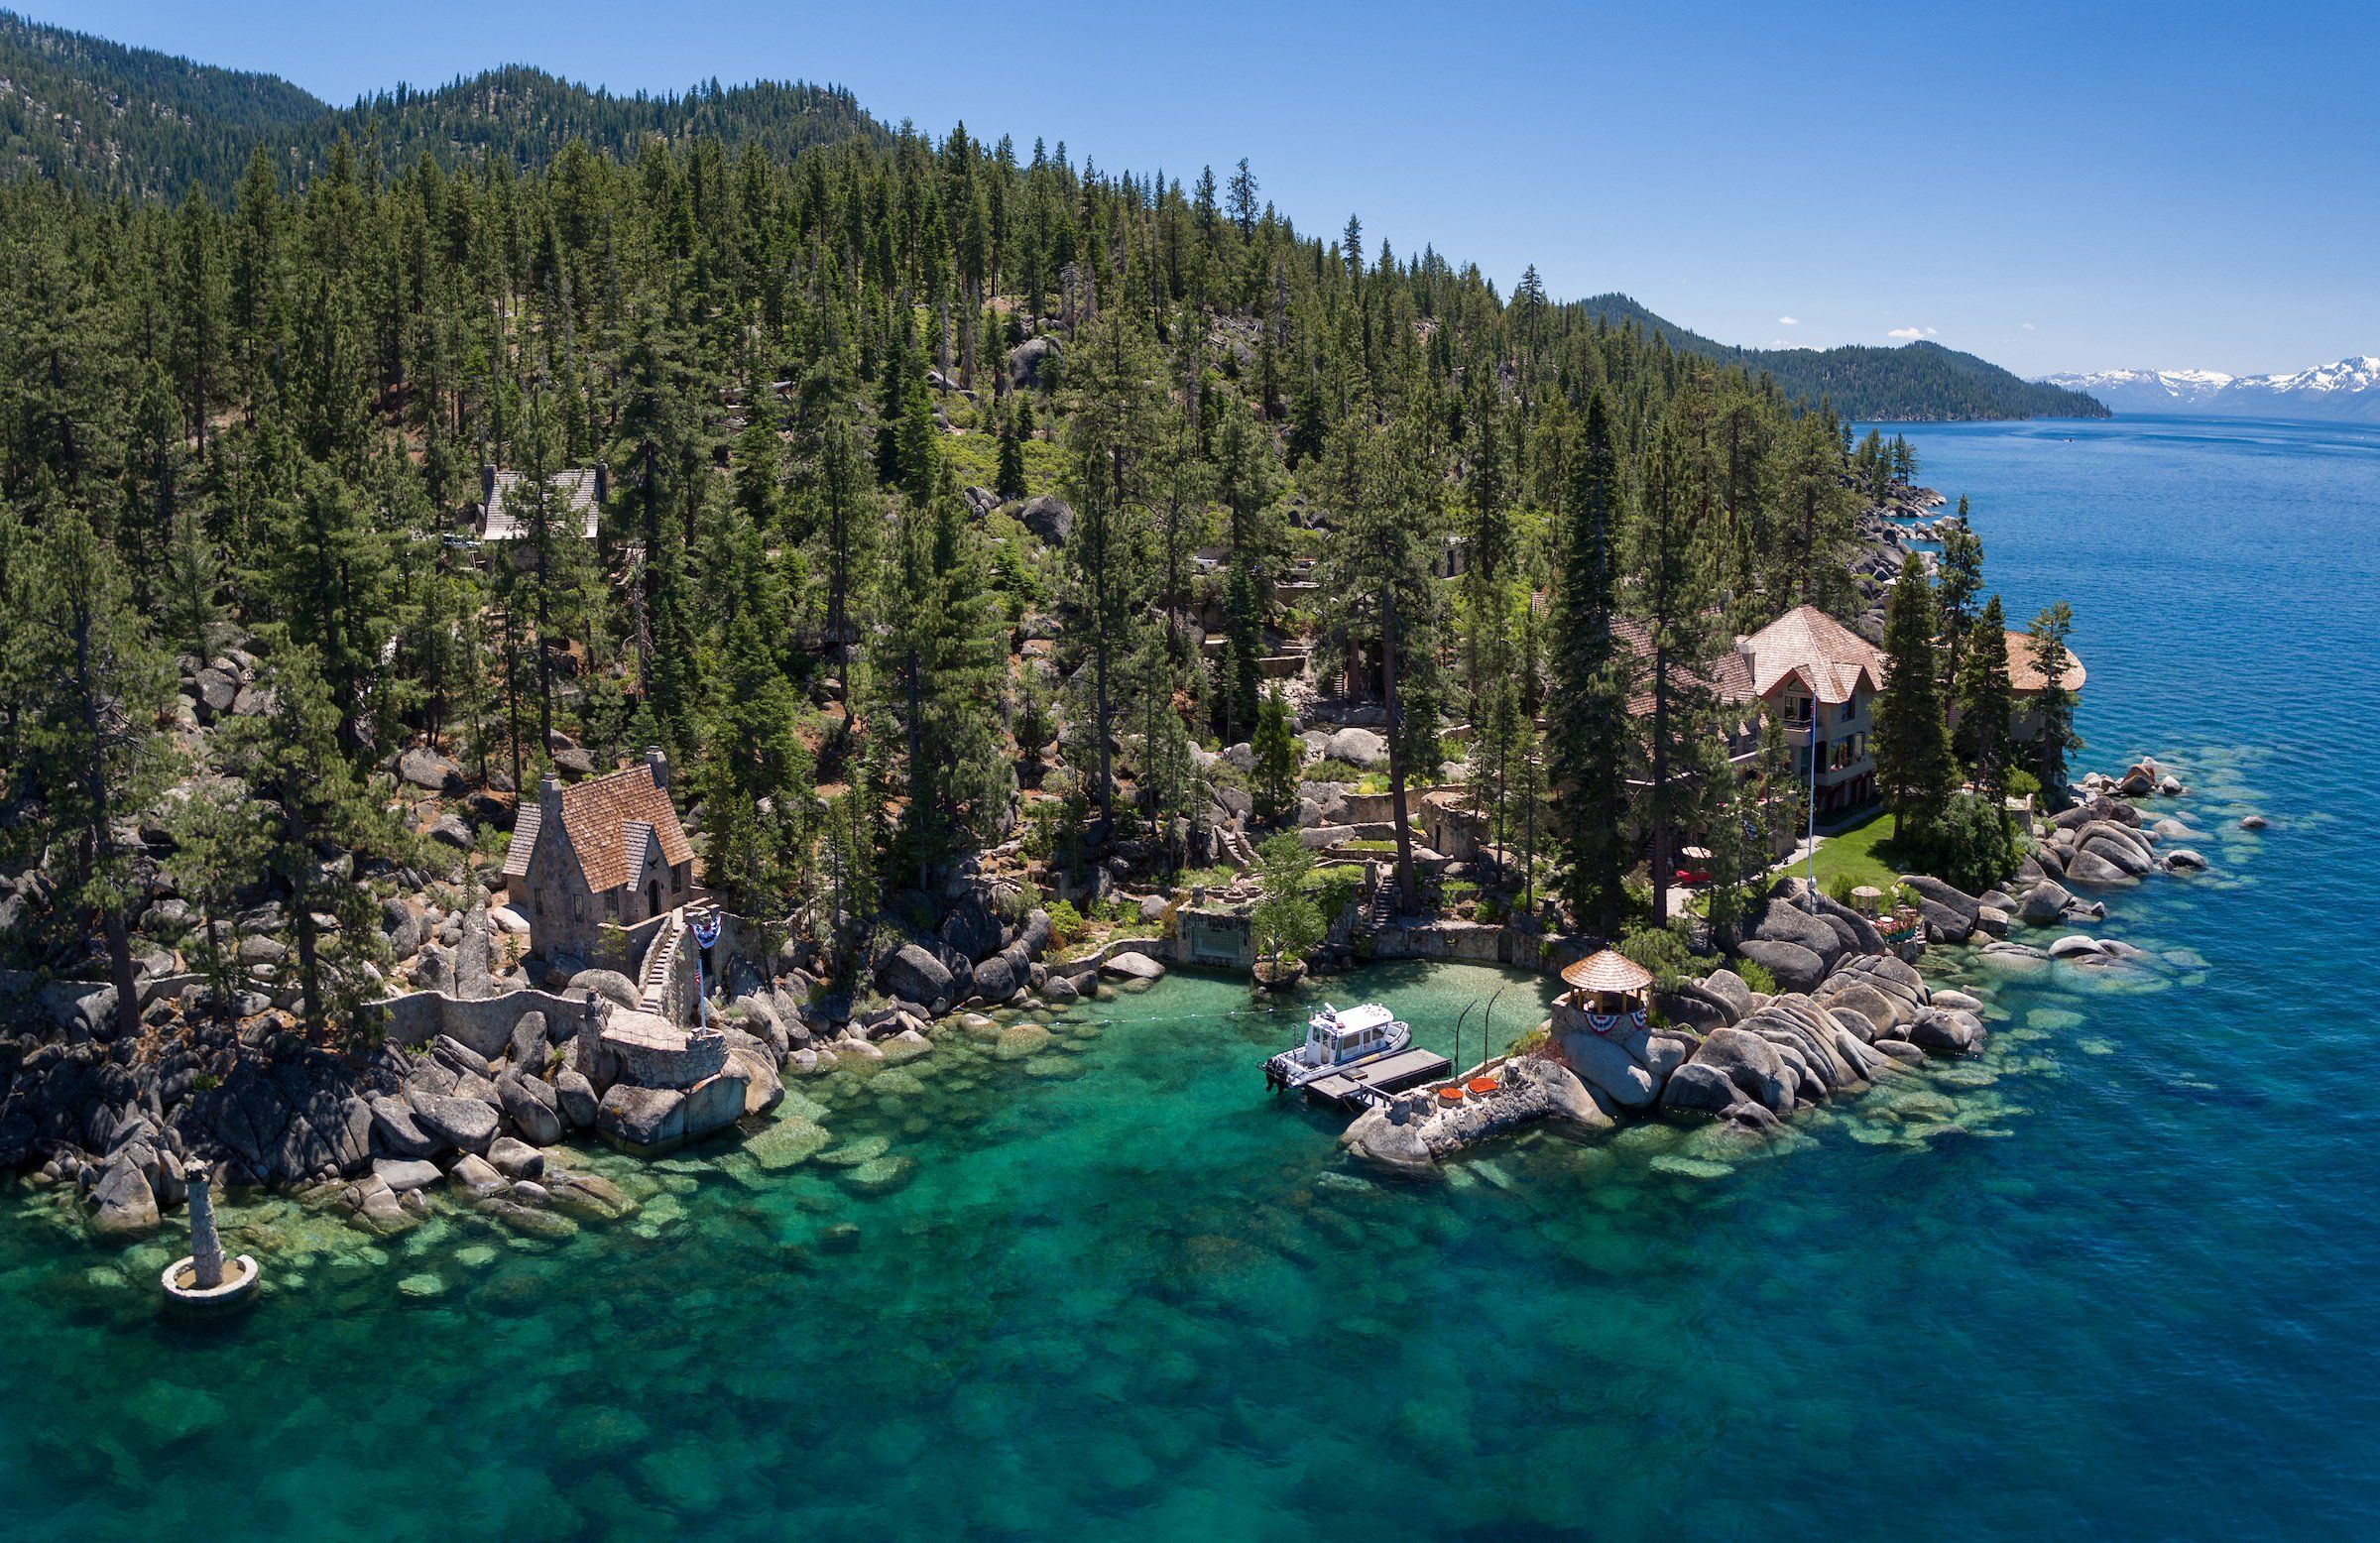 Take a tour through Lake Tahoe's fascinating Thunderbird Lodge